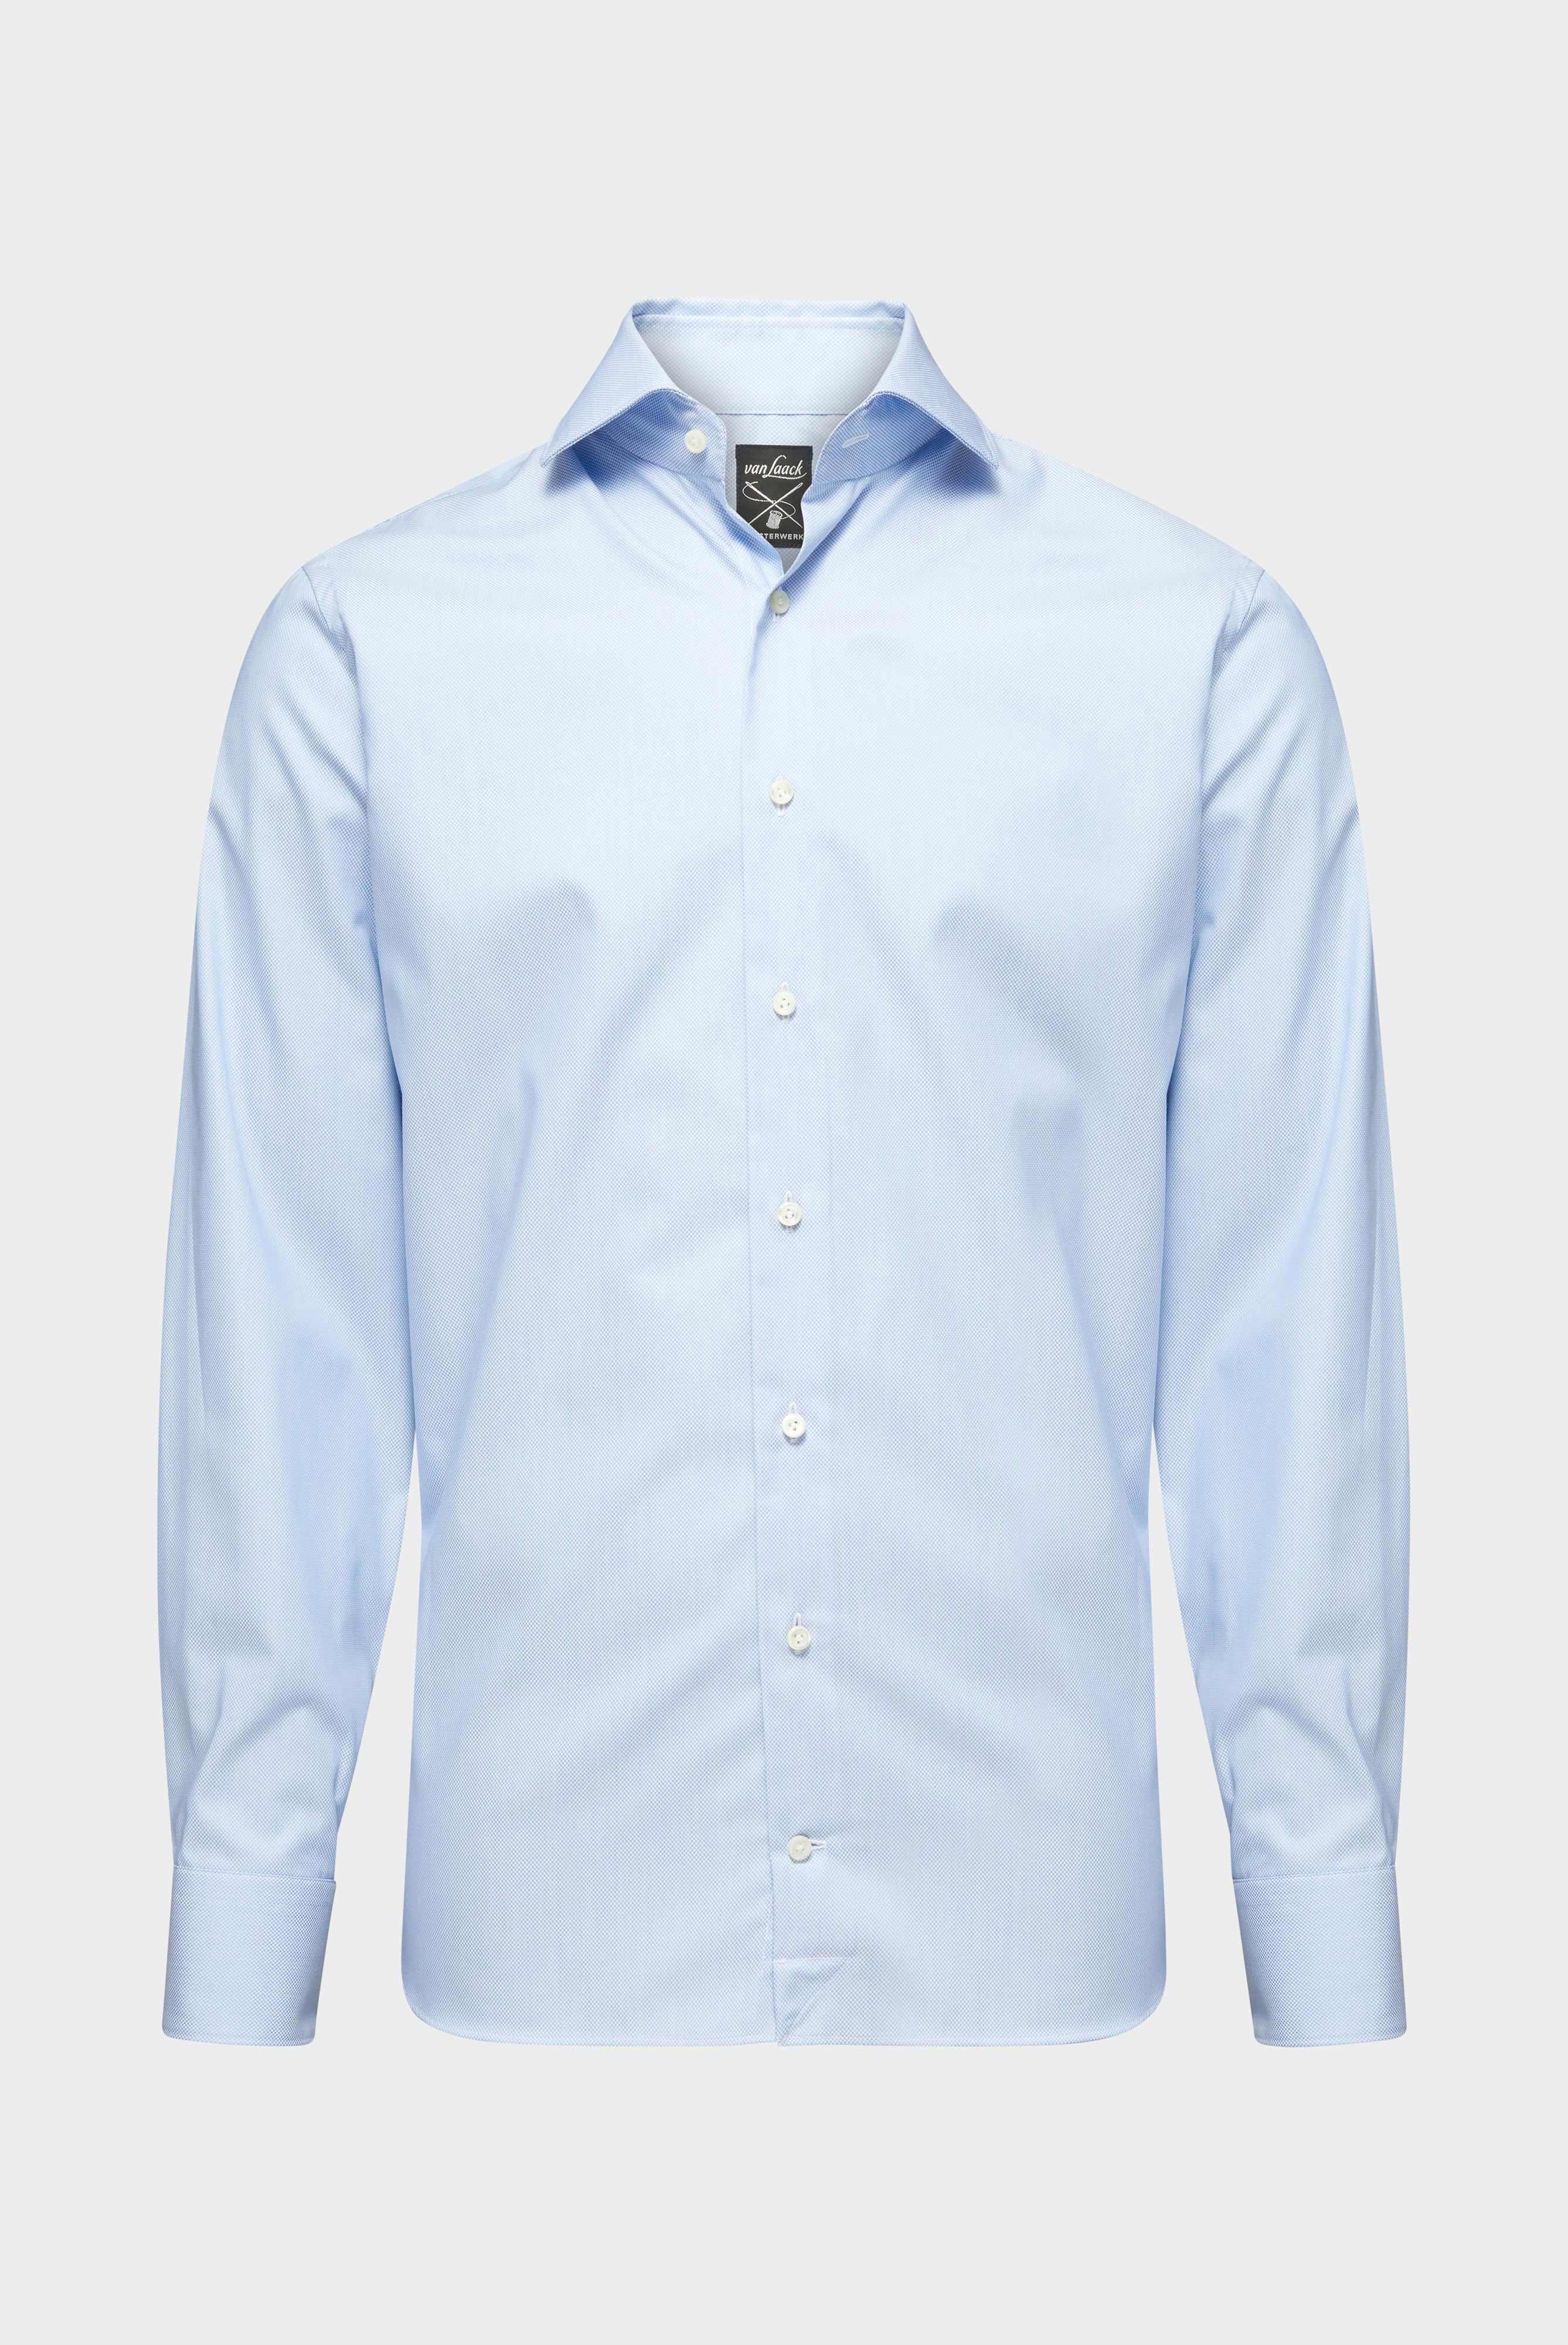 Business Shirts+Textured Sartorial Shirt Tailor Fit+20.2502.NV.151209.730.38